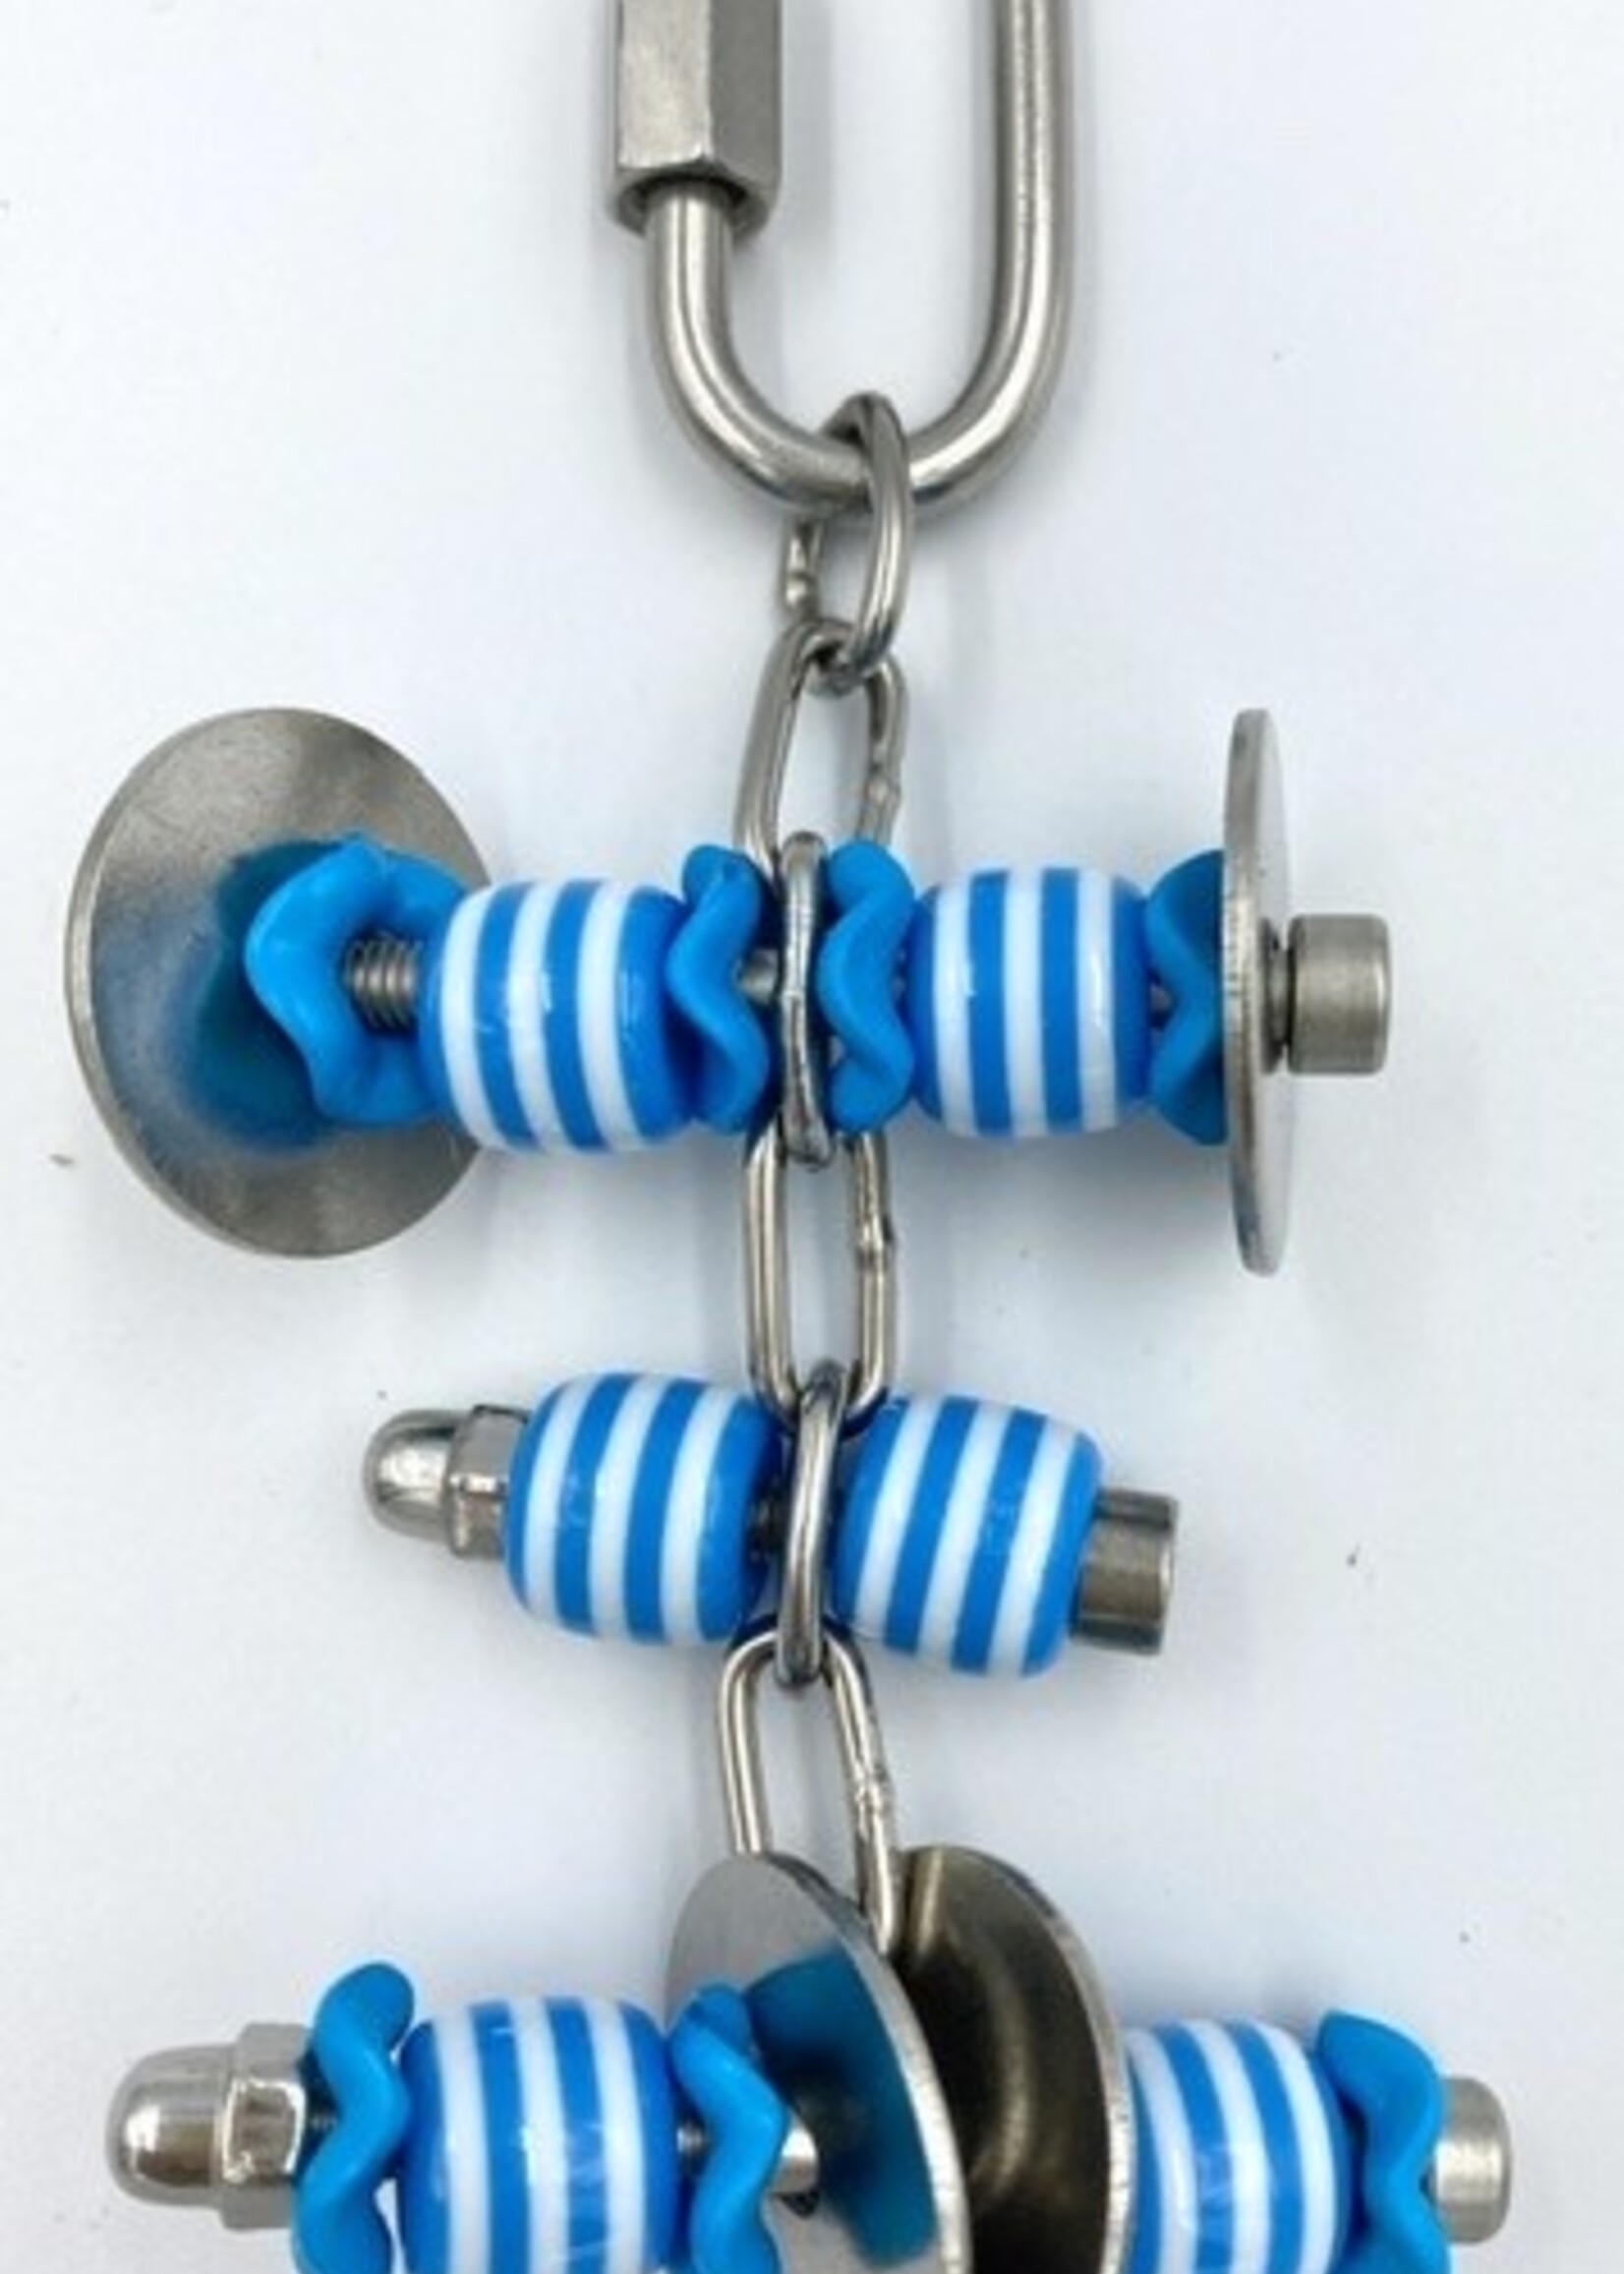 Gaaien-frutsels Bead chain